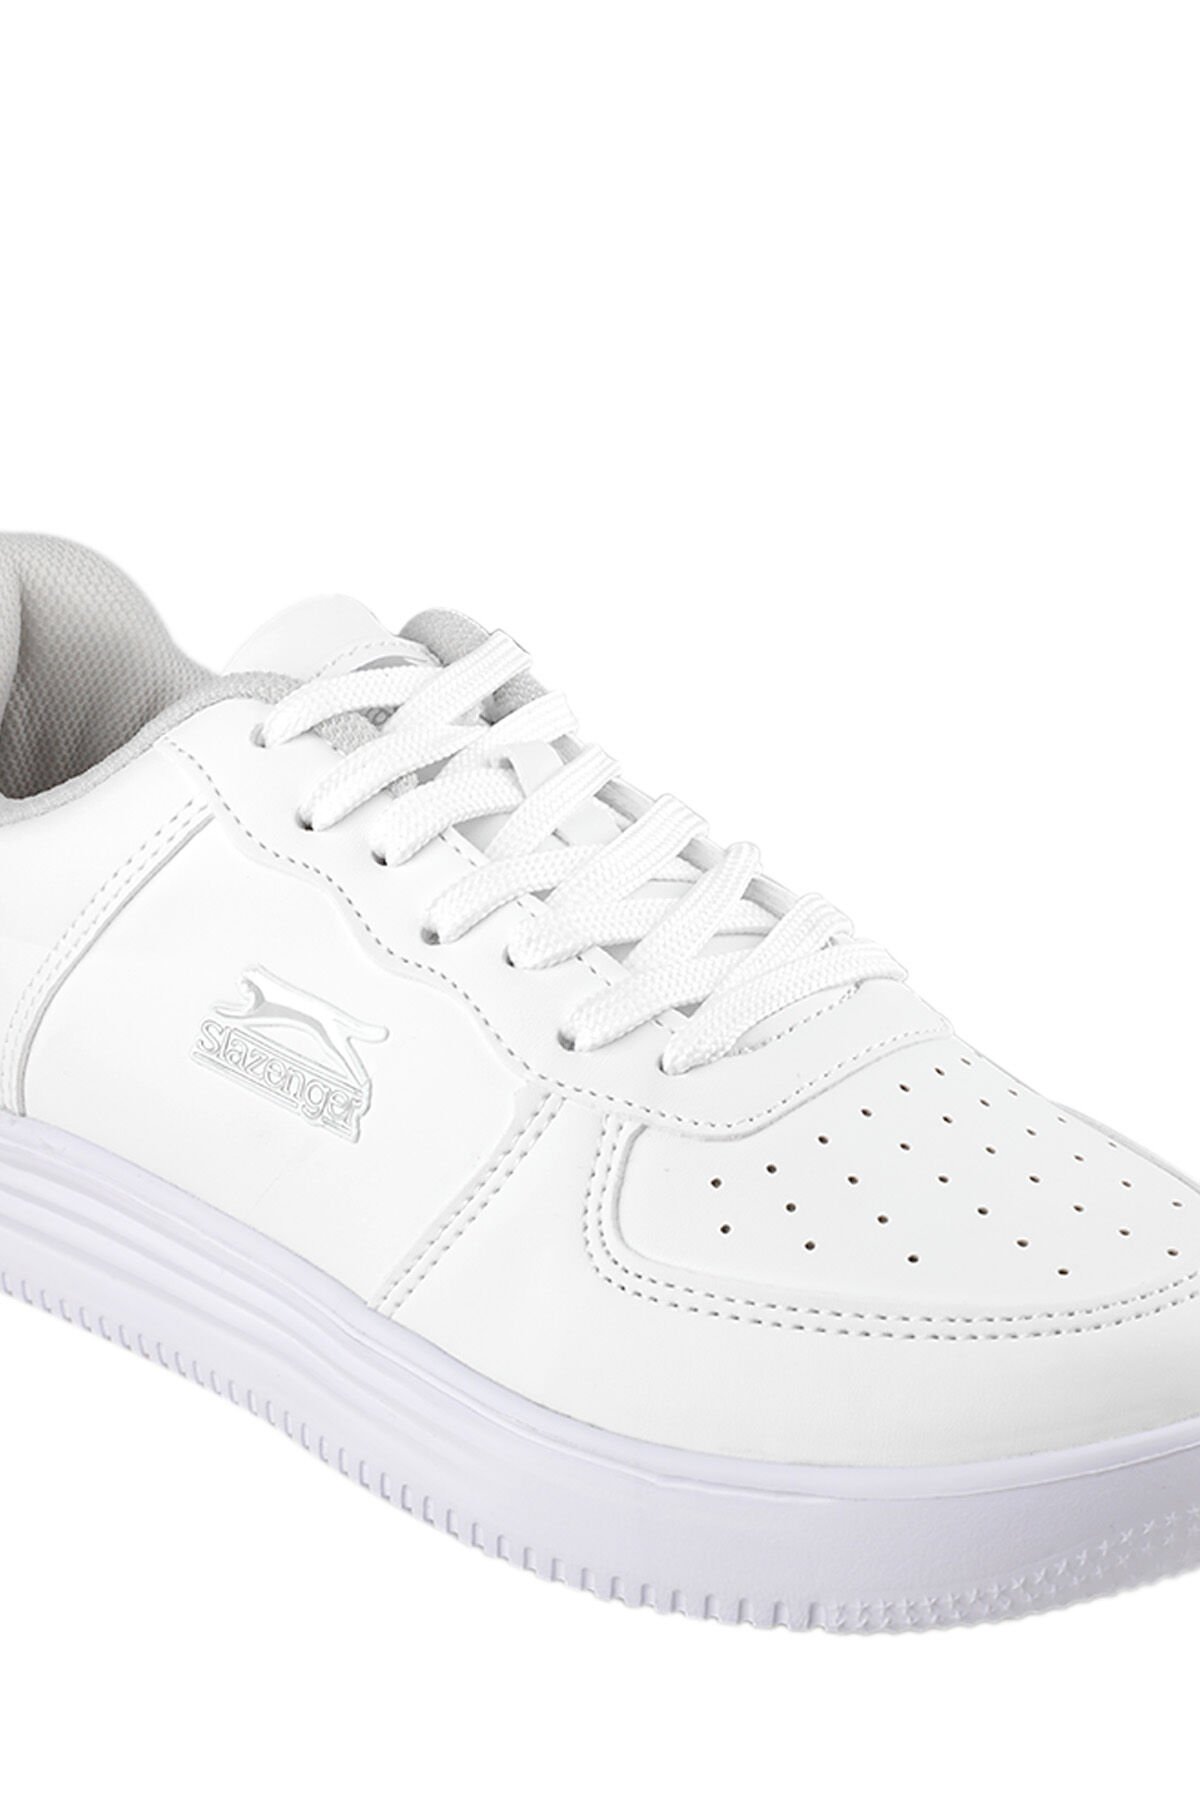 Slazenger CARBON Sneaker Kadın Ayakkabı Beyaz - Thumbnail